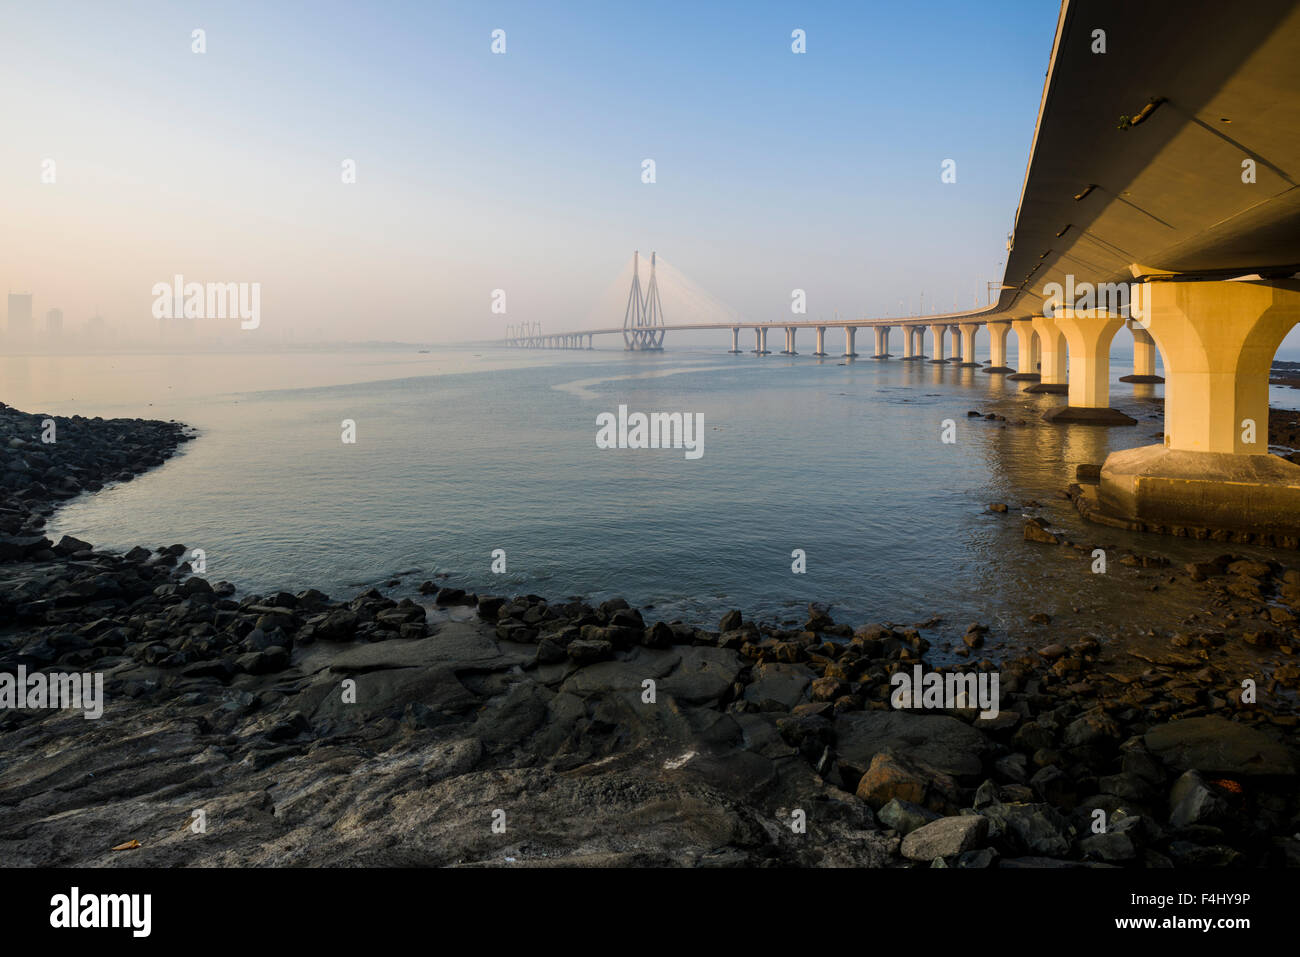 Le lien de la mer Bandra–Worli, officiellement appelé lien de la mer Rajiv Gandhi, est un pont à câbles avec du béton précontraint vi Banque D'Images